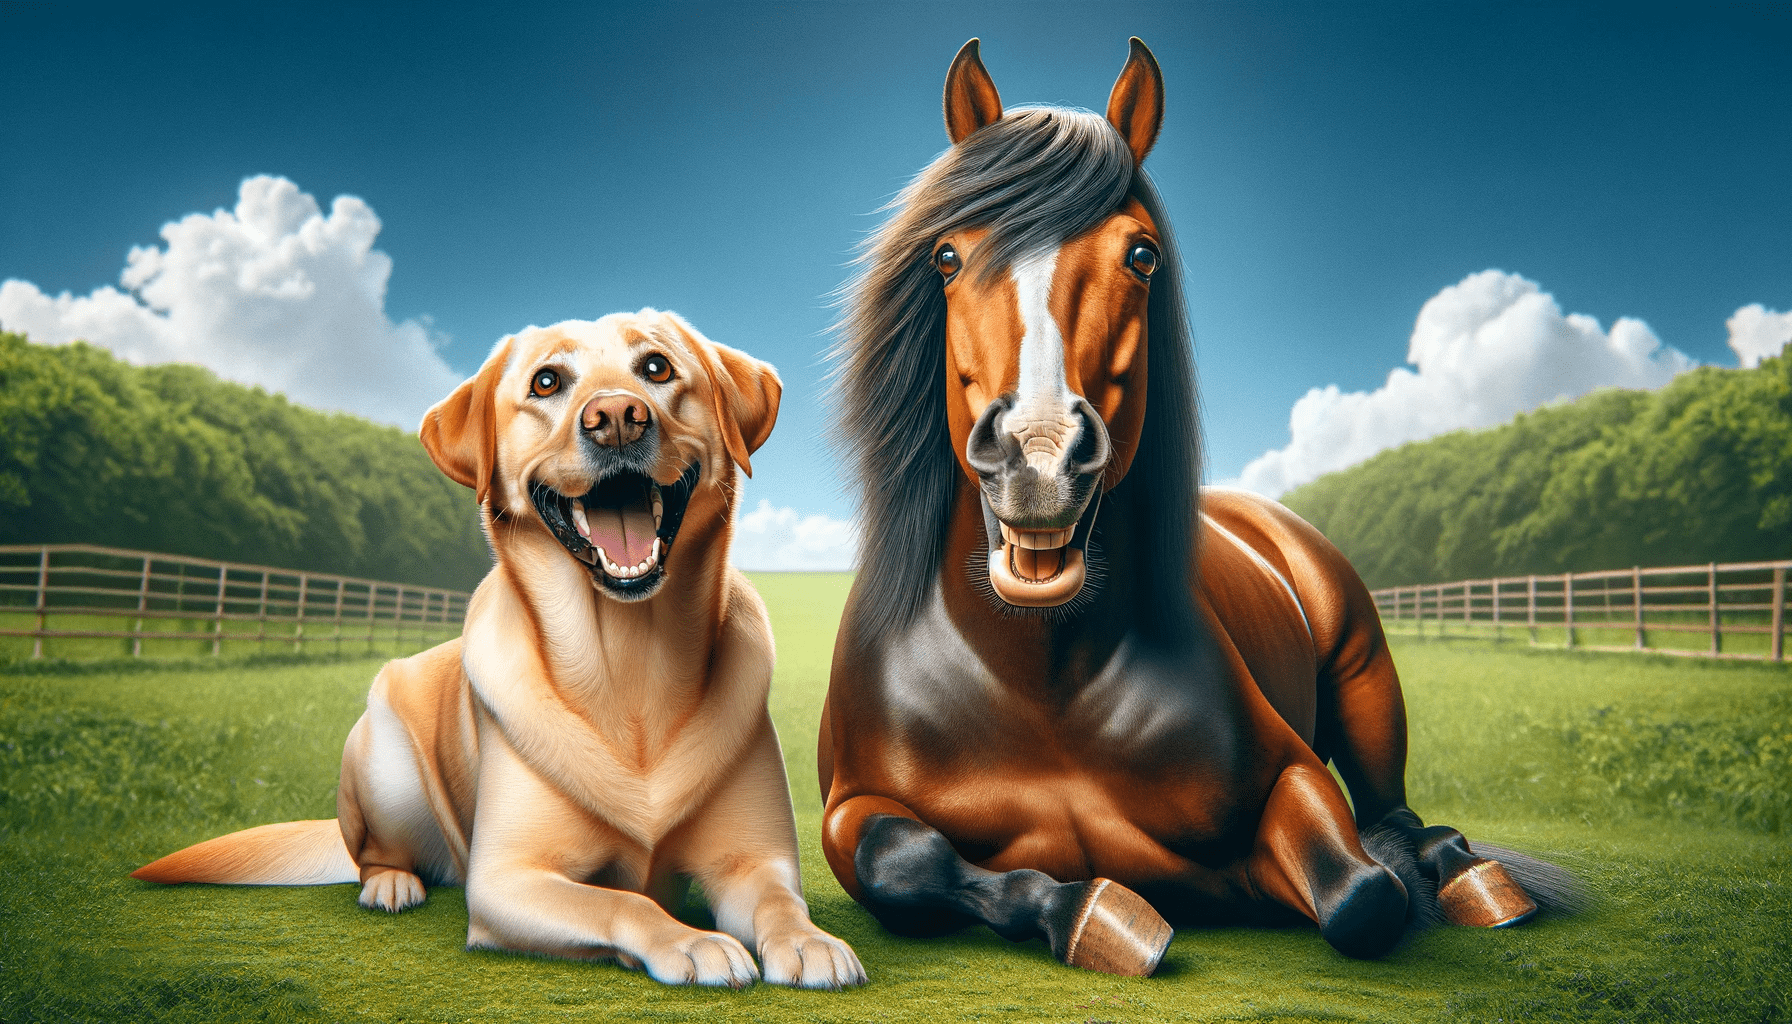 LaziRoll Faszienrolle Pferd und Hund Glücklich nach einer Faszienmassage mit der Faszienrolle von LaziRoll, Ernährung Pferd, Physiotherapie Pferd, Faszienrolle Pferd, LaziRoll, Aromatherapie, Massageknoten, Physiotherapie, Massage, Massage Hund, Faszienrad Hund, Tierwohl